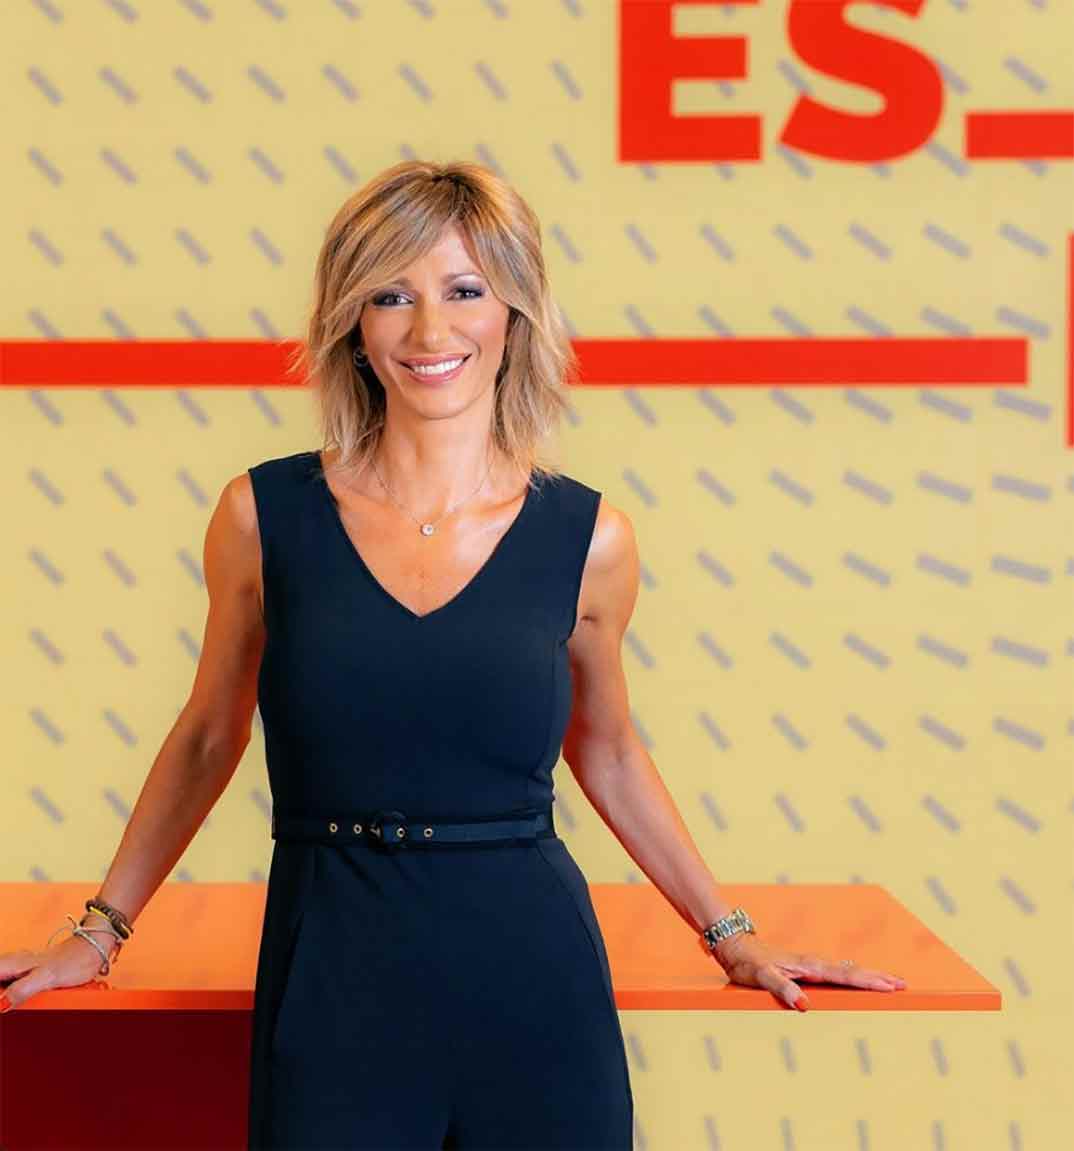 Susanna Griso - Espejo Público © Antena 3